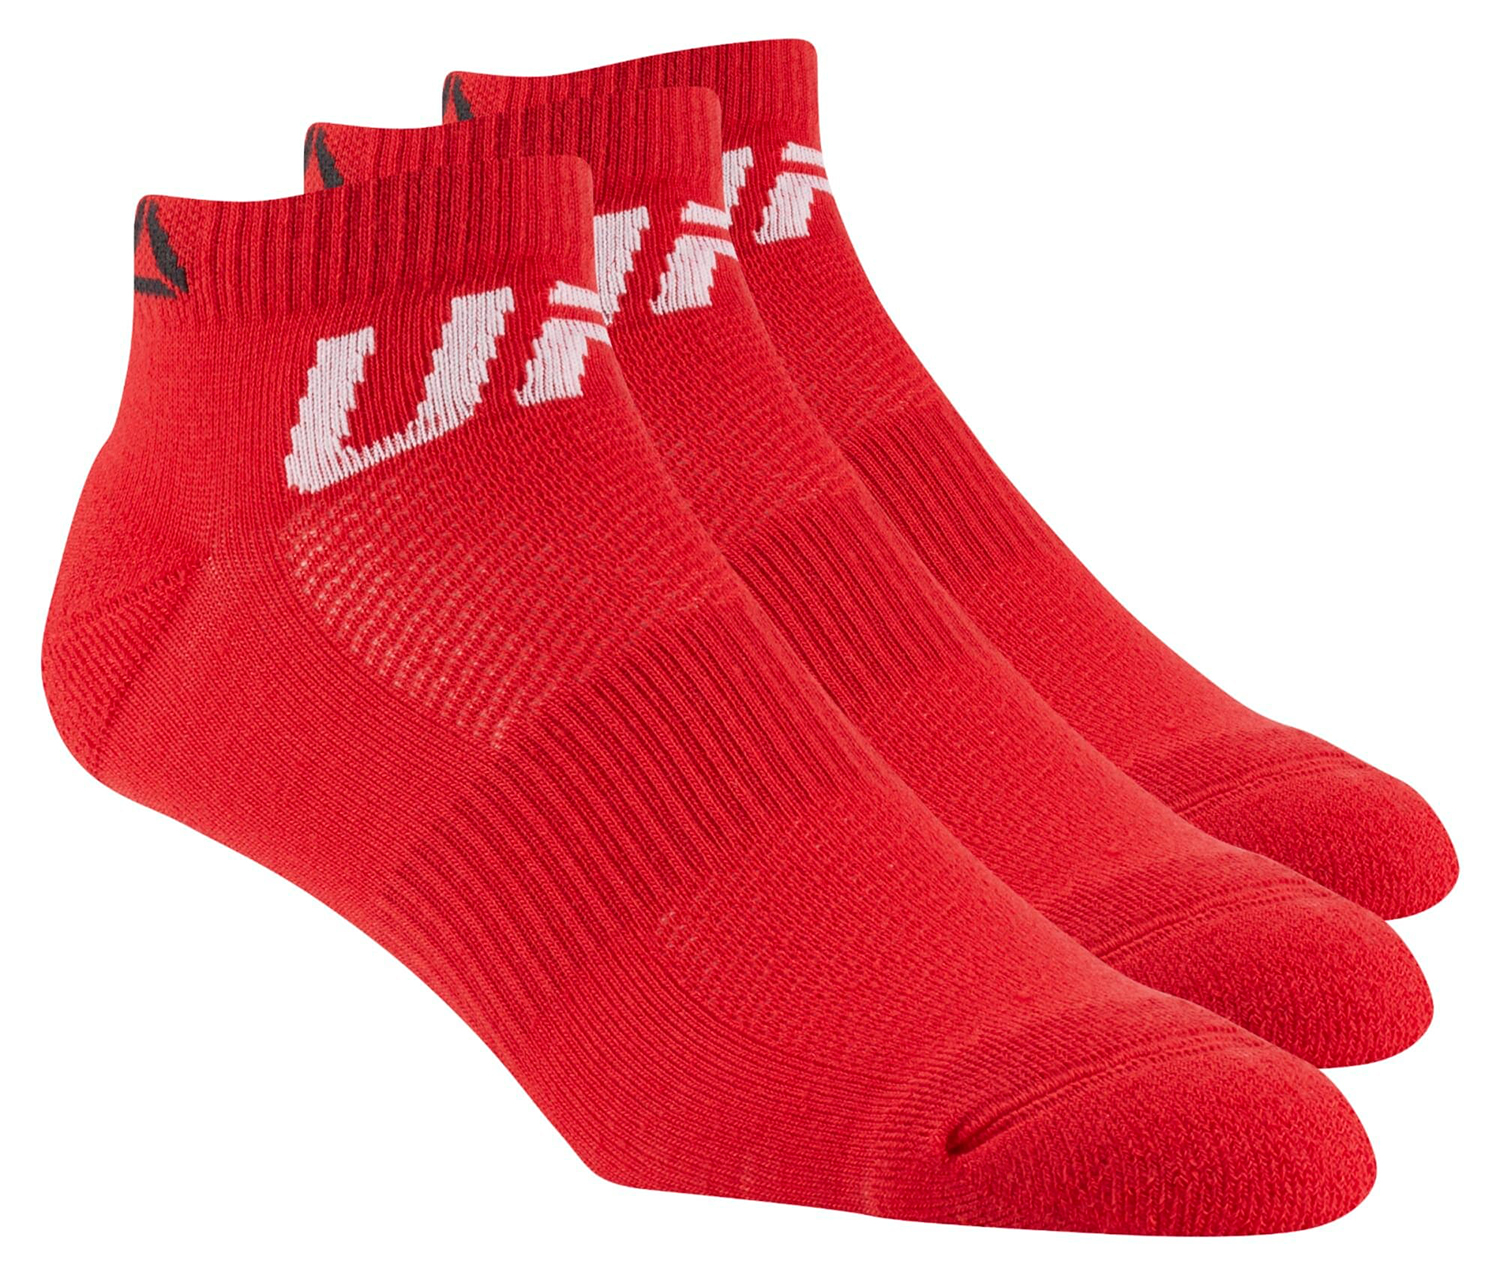 Носки рибок. Носки Reebok UFC красные. Носки рибок юфс. Носки Reebok красные. Reebok носки красные мужские.